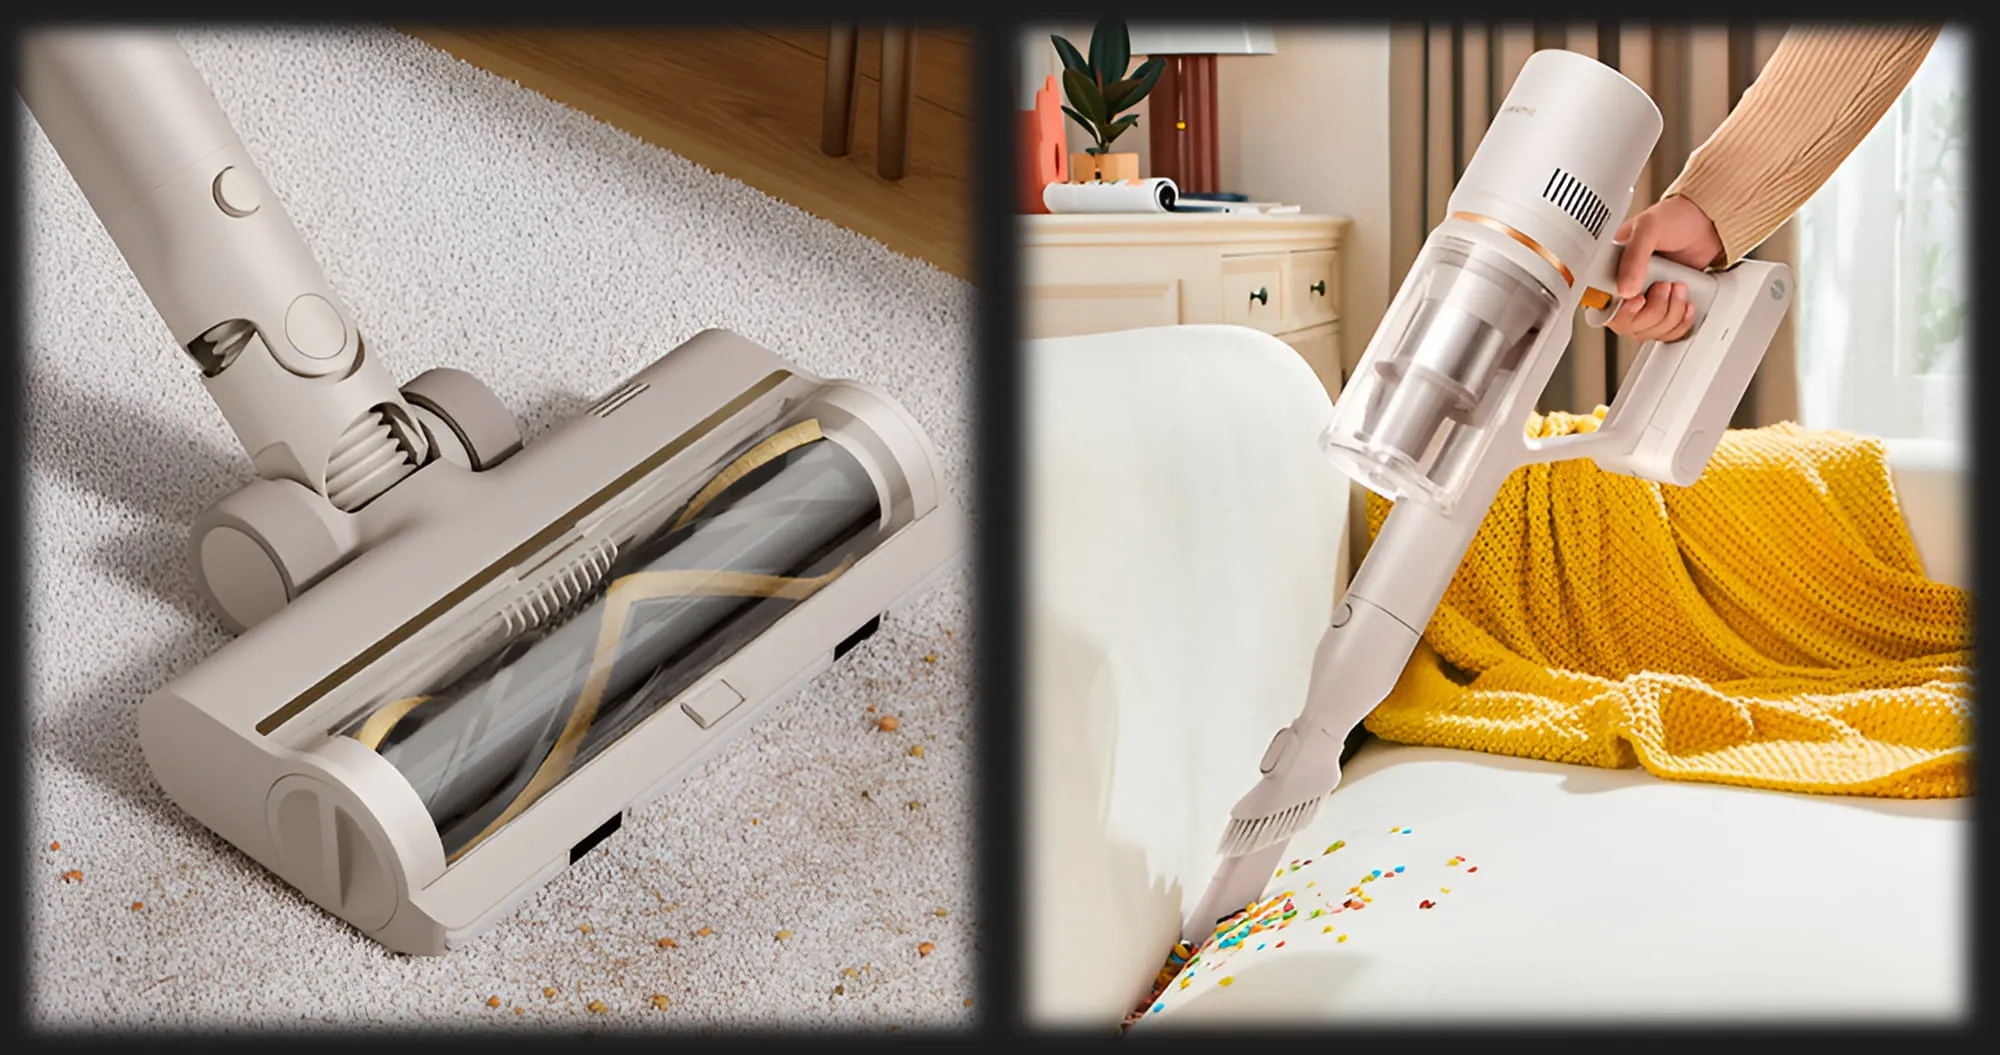 Пилосоc Dreame Cordless Vacuum Cleaner U20 (White/Gold)